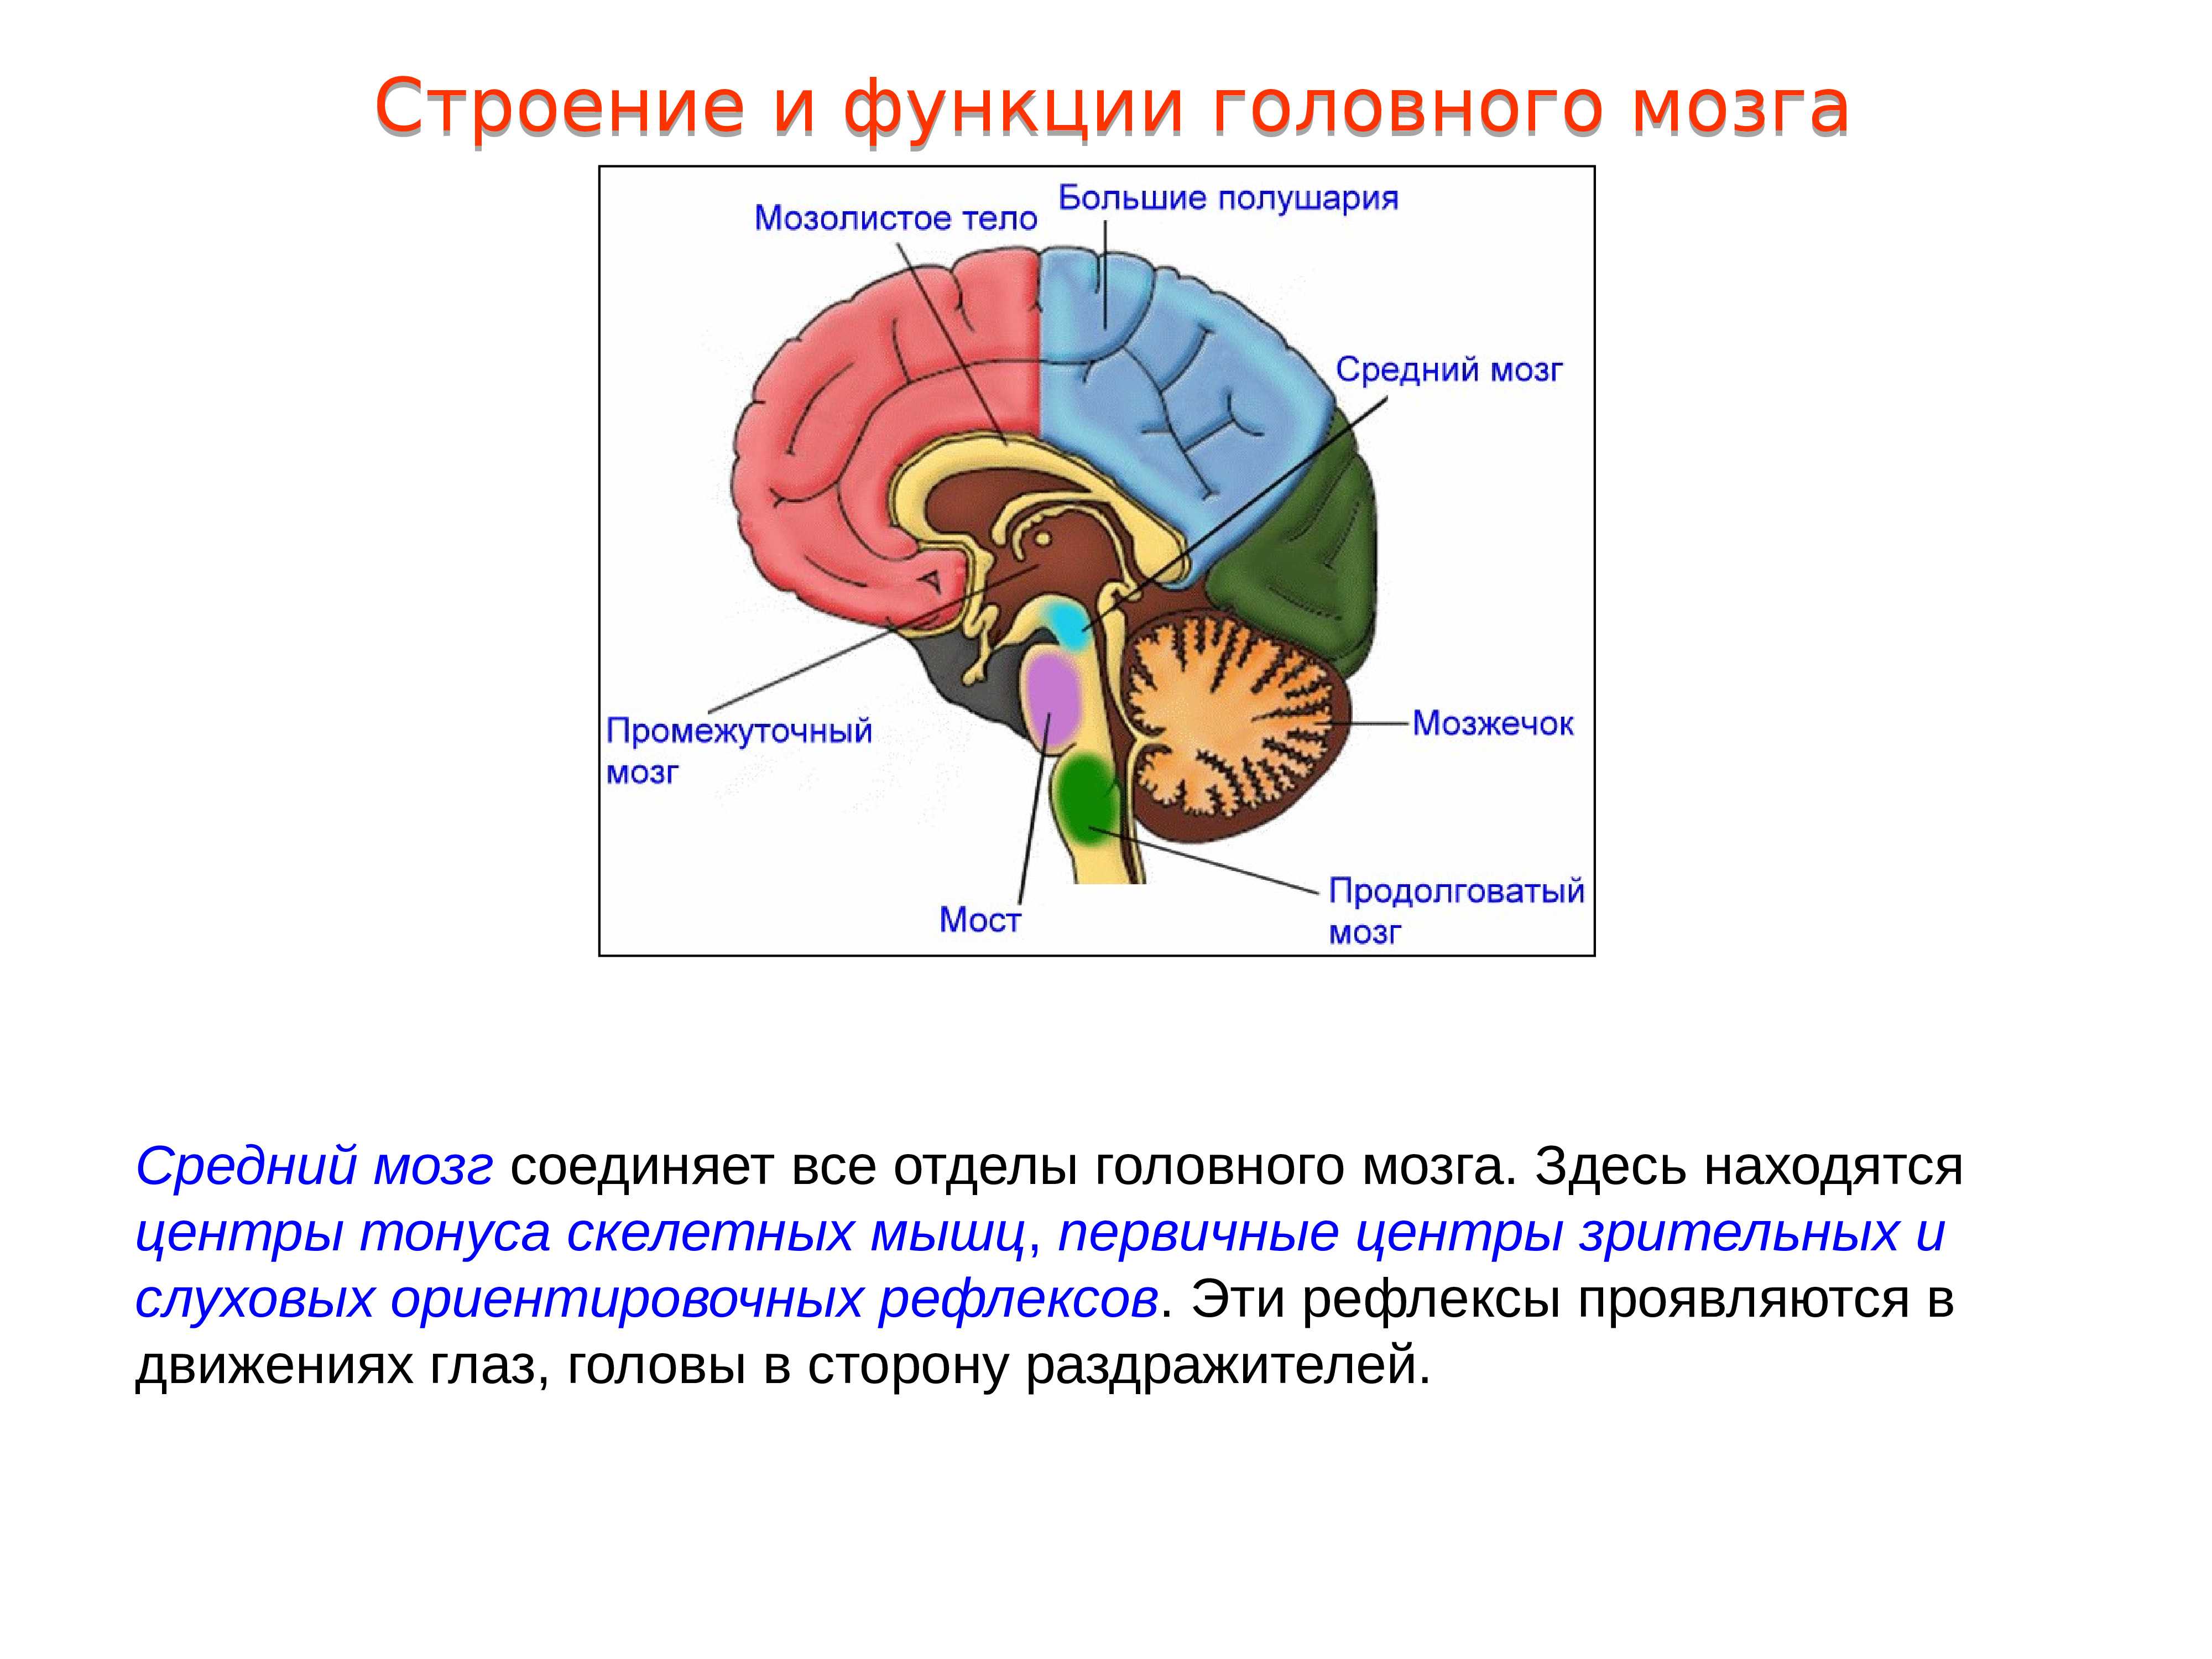 Центры рефлексов переднего мозга. Отделы среднего мозга и их функции. Центры ориентировочных зрительных и слуховых рефлексов. Отделы среднего мозга анатомия. Отдел головного мозга средний мозг строение.